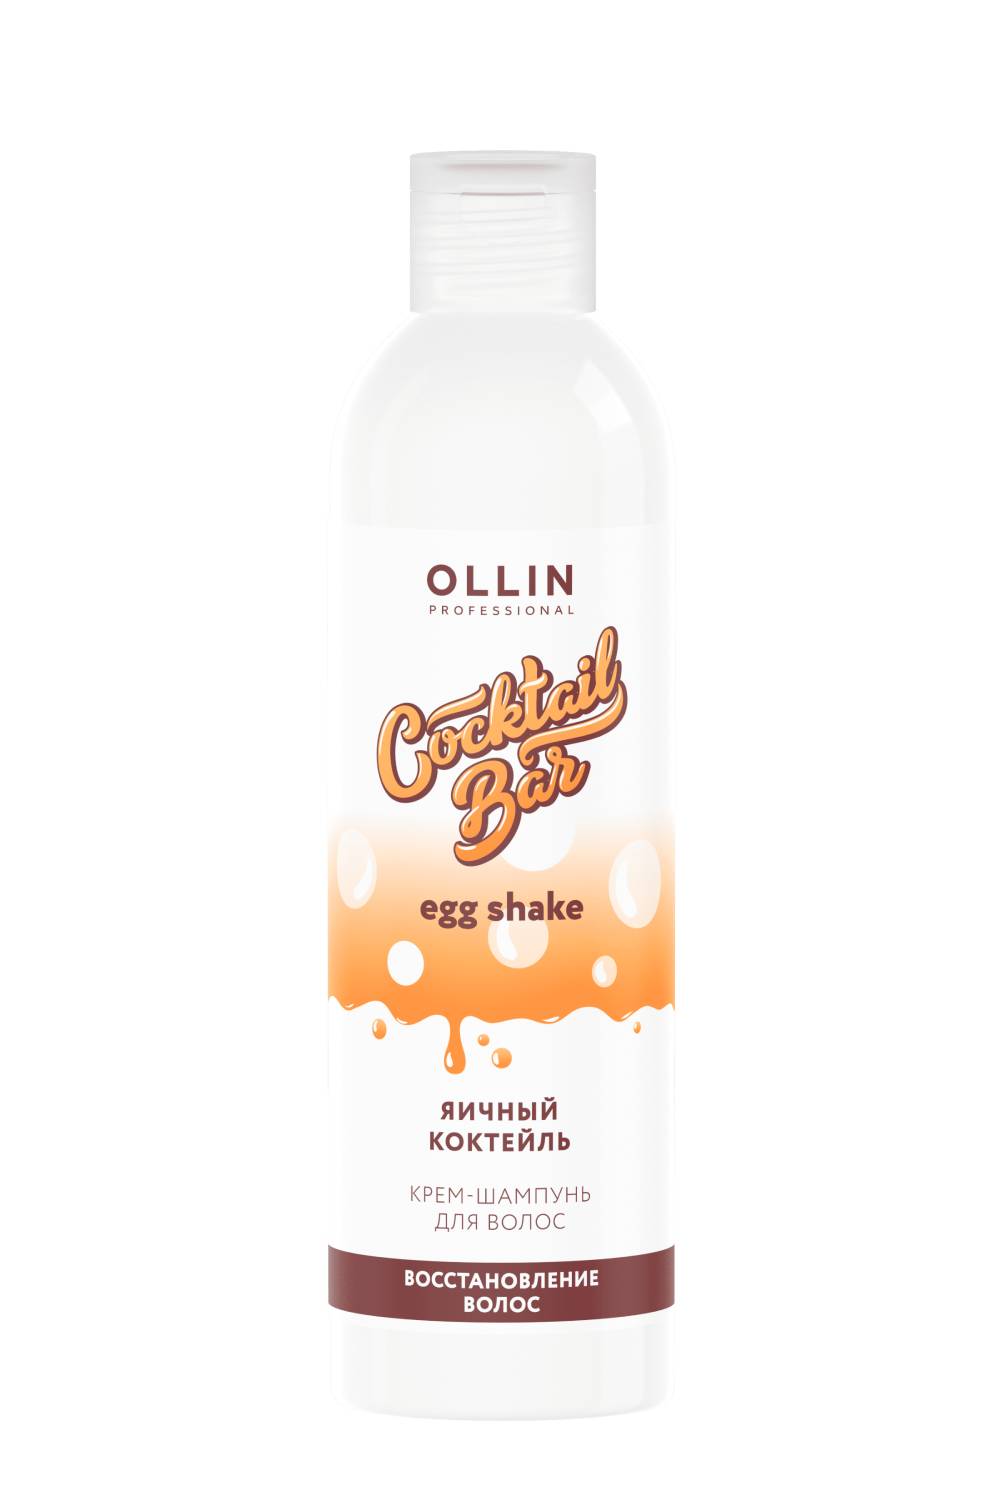 Ollin Professional Крем-шампунь Яичный коктейль для восстановления волос, 400 мл (Ollin Professional, Cocktail Bar)